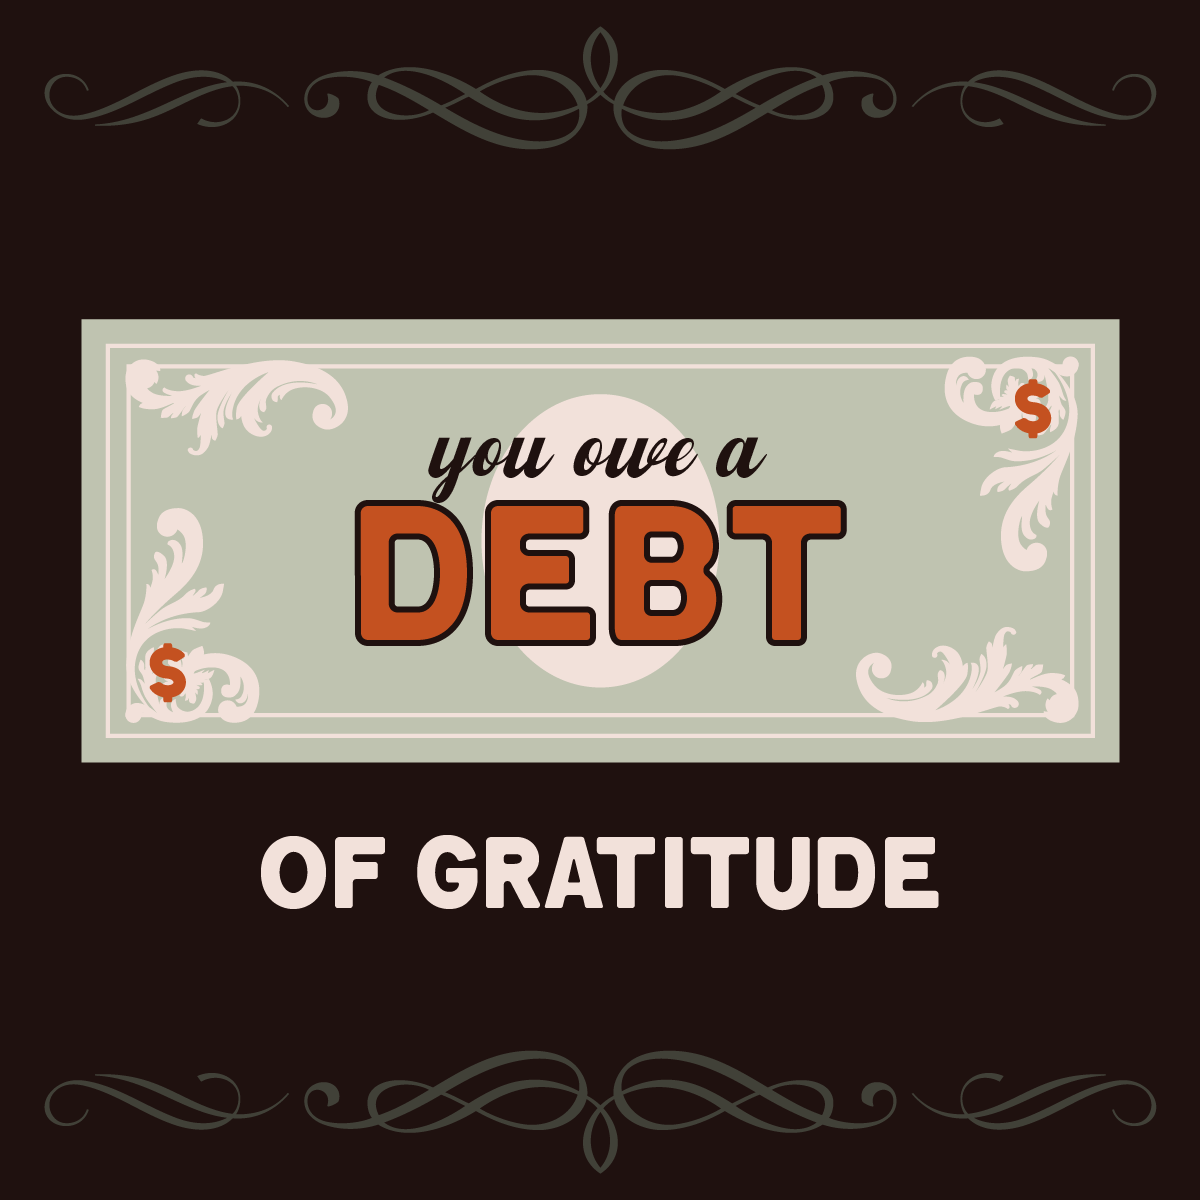 You owe a debt of gratitude